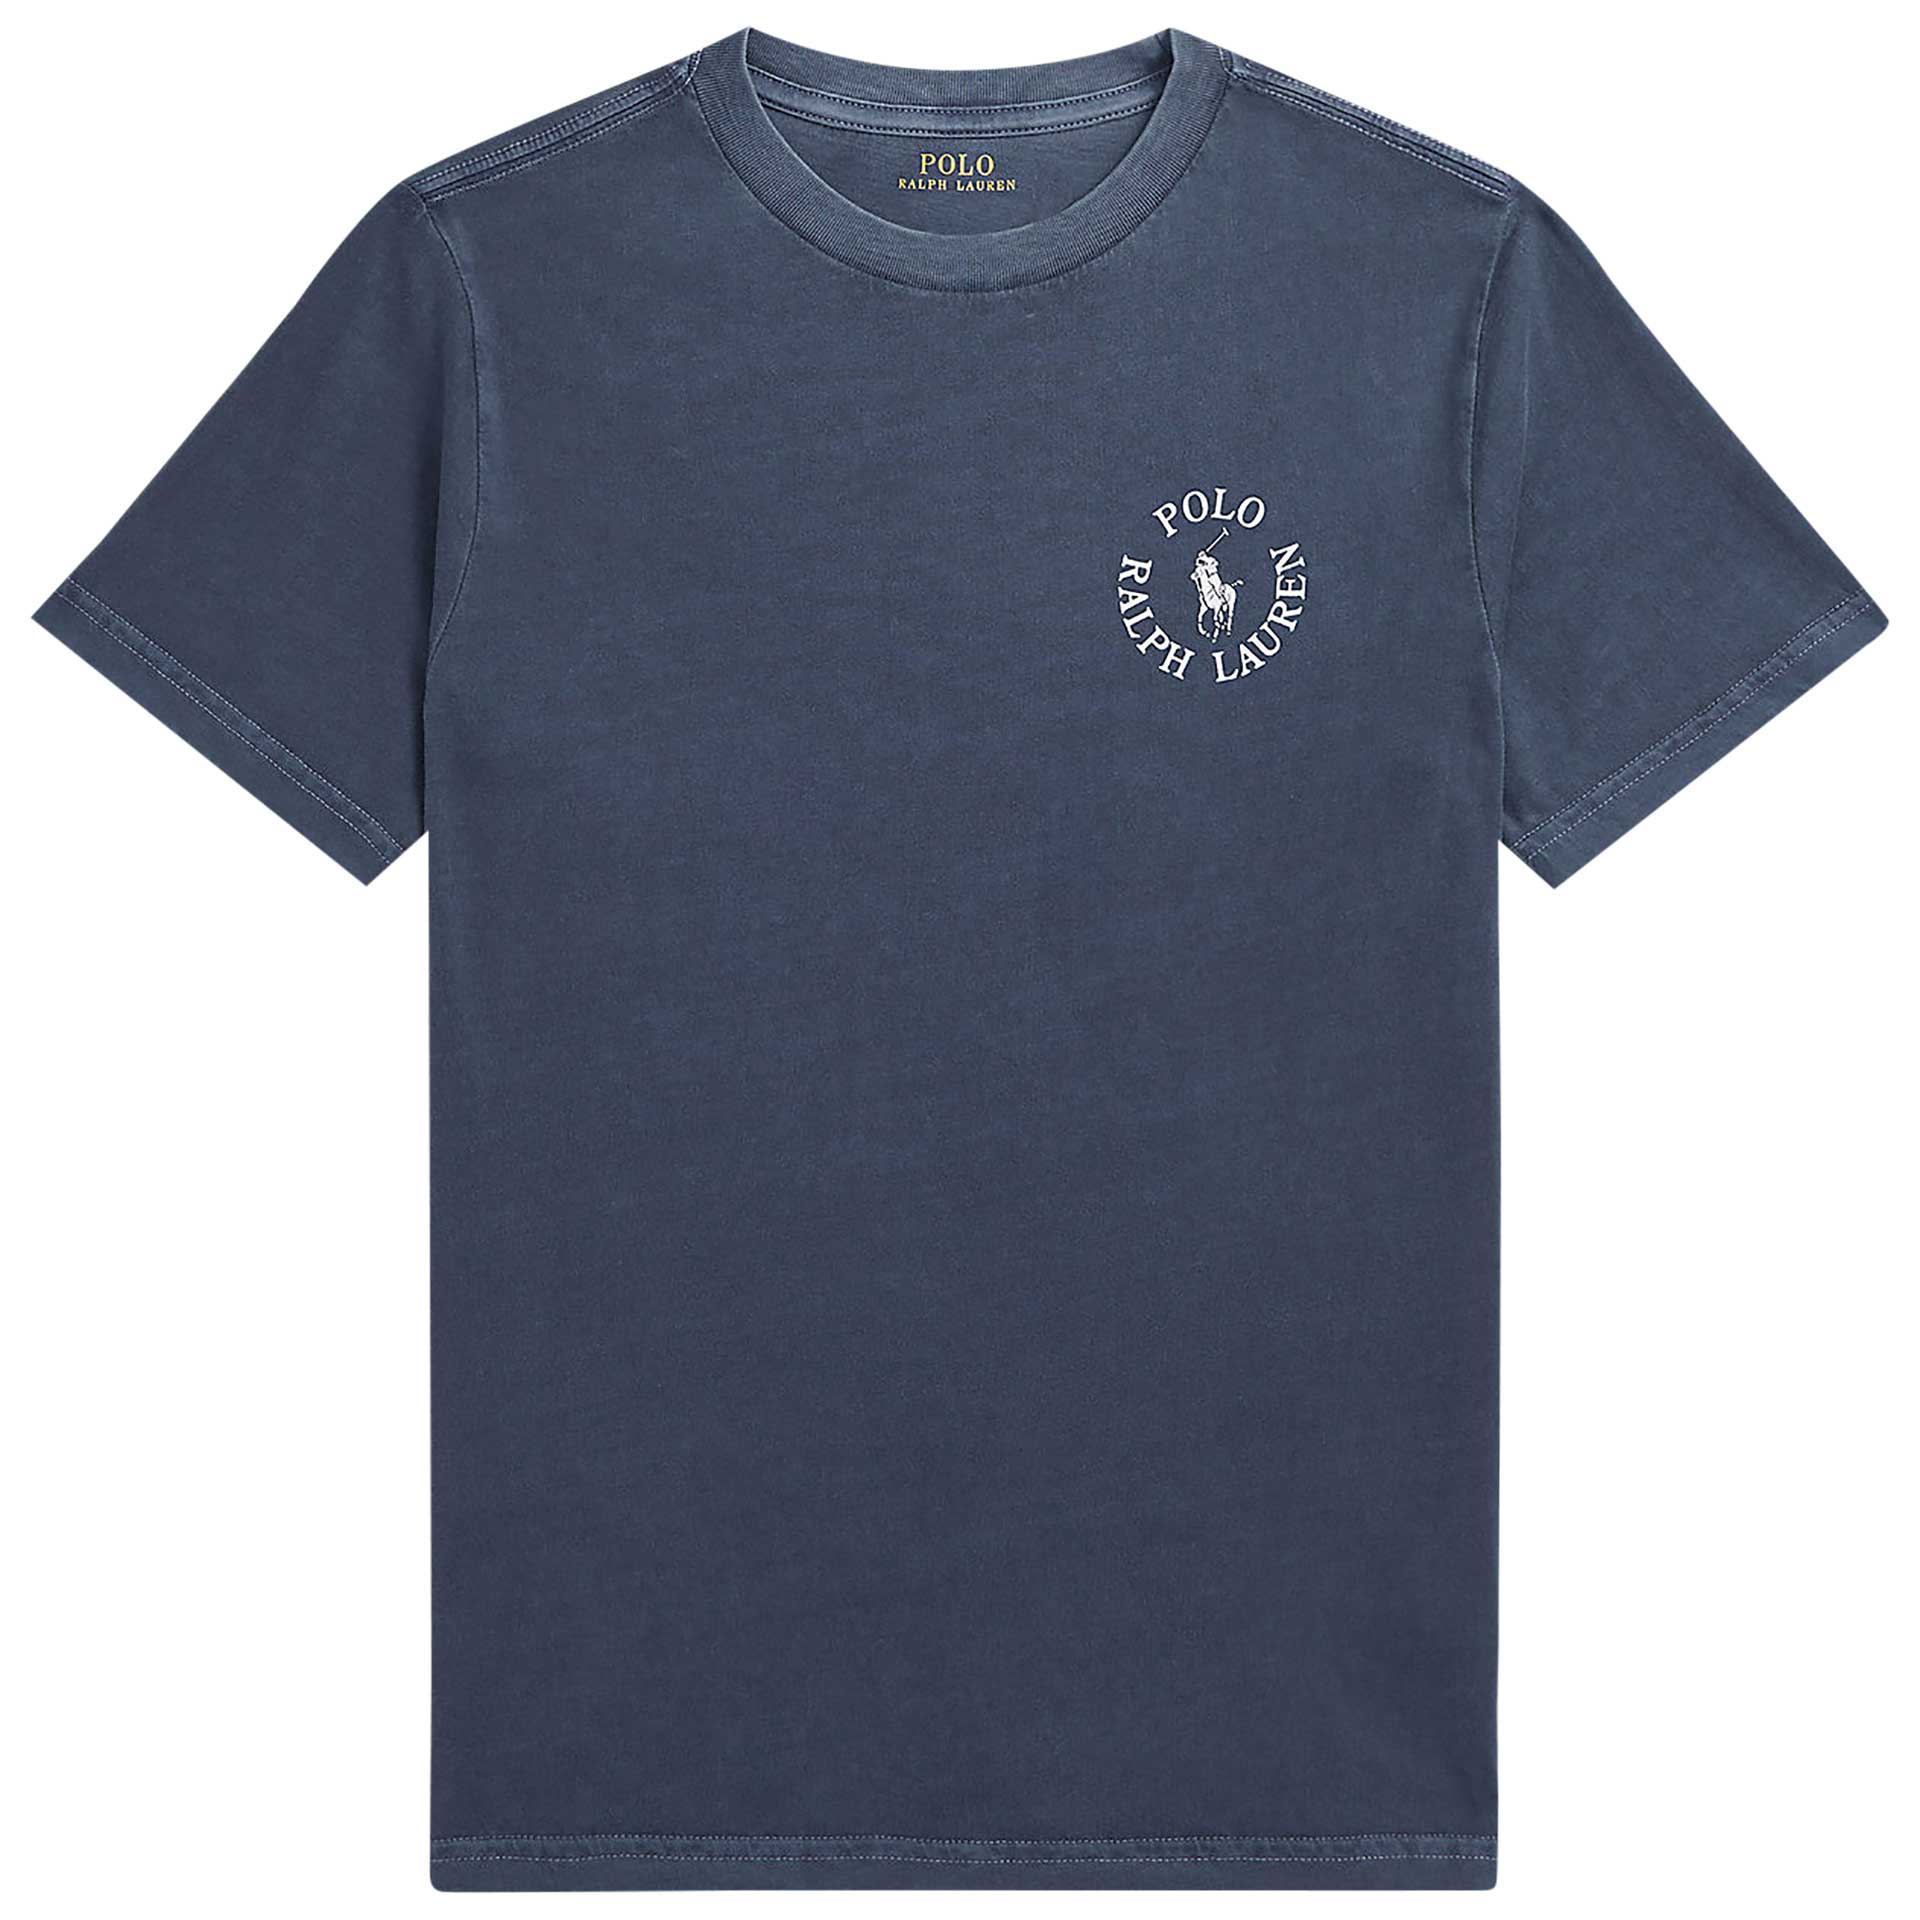 Polo Ralph Lauren T-shirt 1